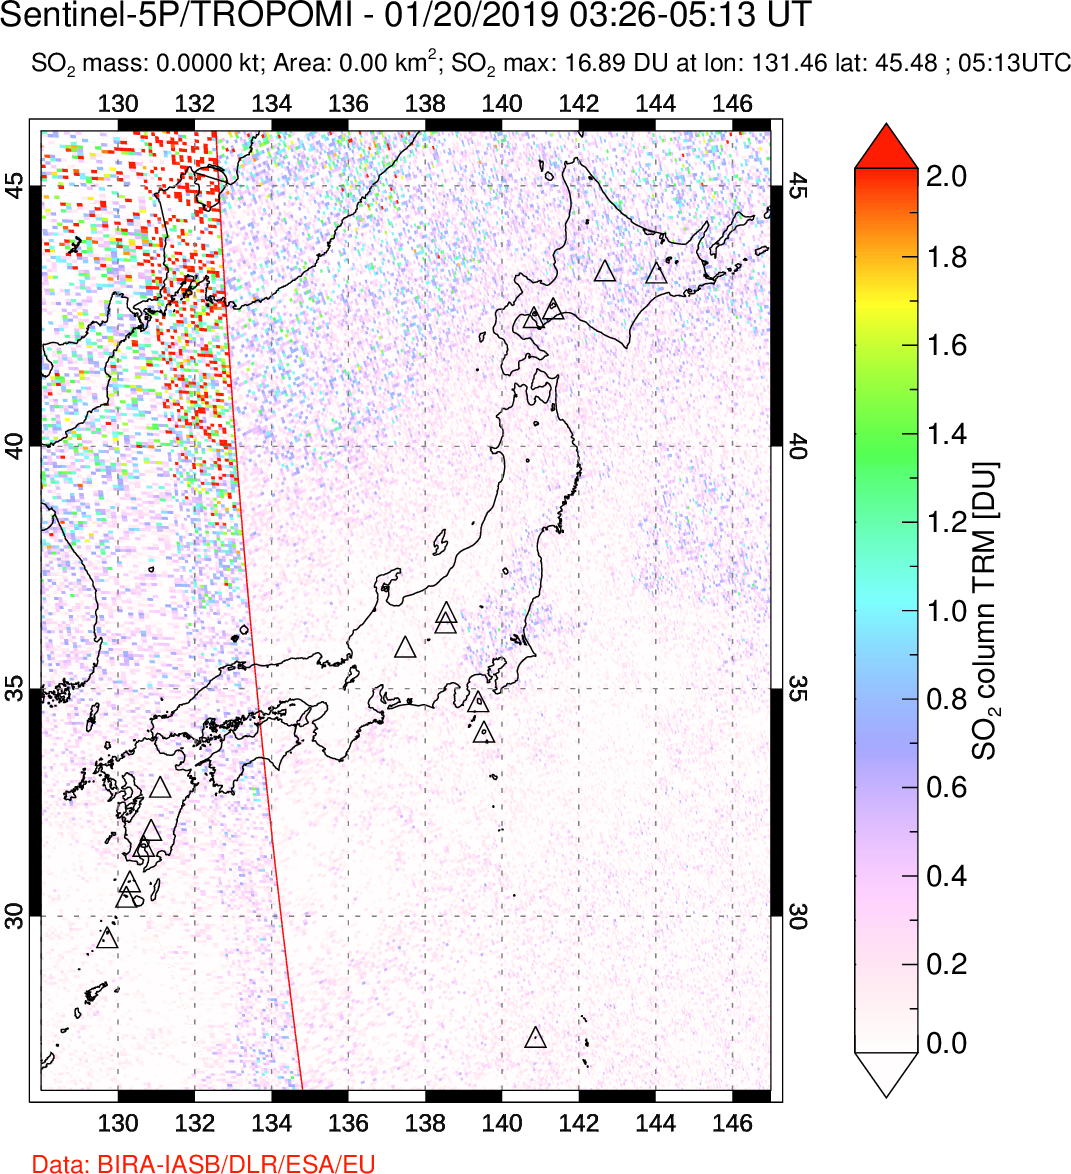 A sulfur dioxide image over Japan on Jan 20, 2019.